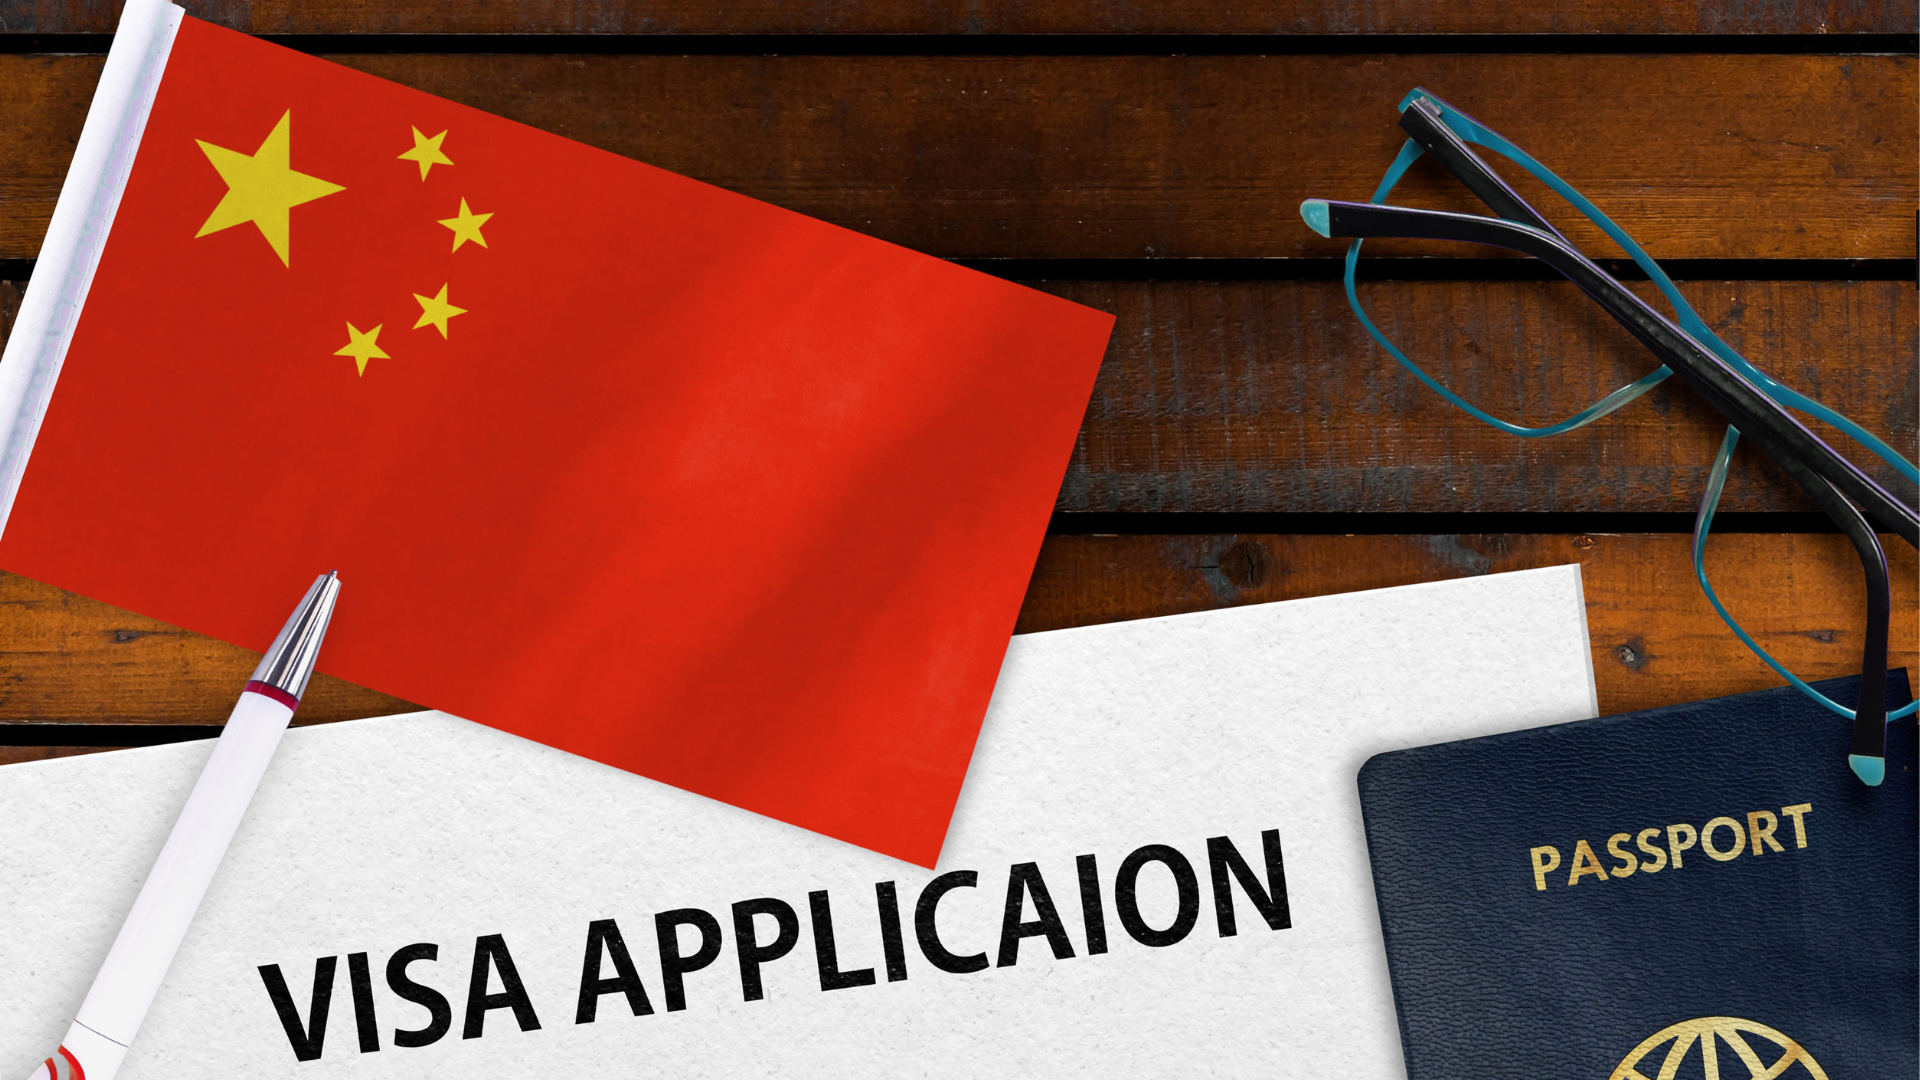 หลายฝ่ายเห็นพ้องให้ Free Visa นักท่องเที่ยวจีน แต่อาจใช้ไม่ทันไตรมาส 4/2566